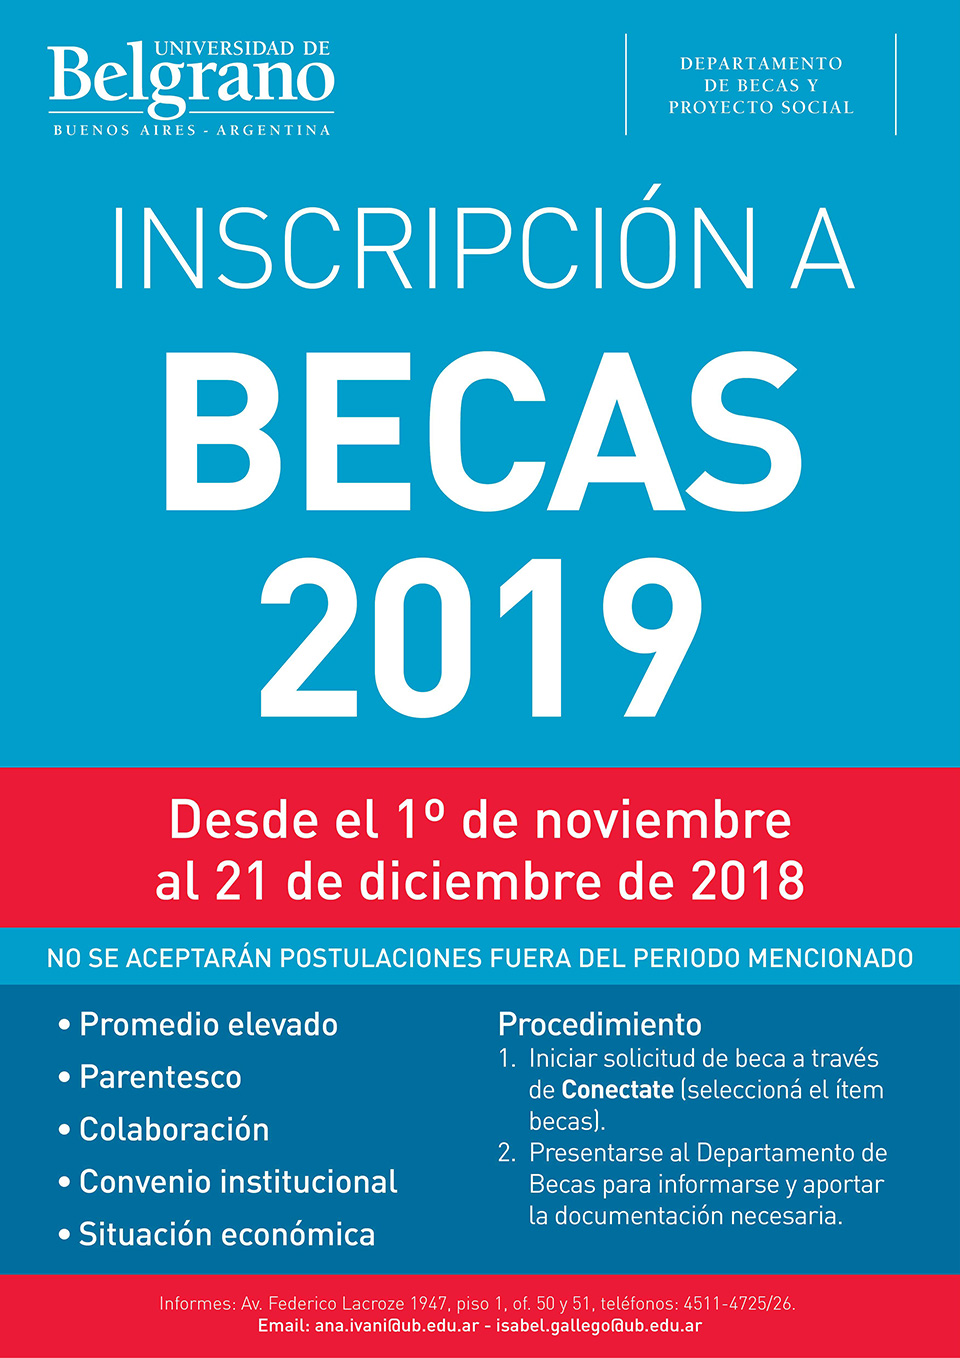 Universidad de Belgrano | Inscripción a Becas 2019